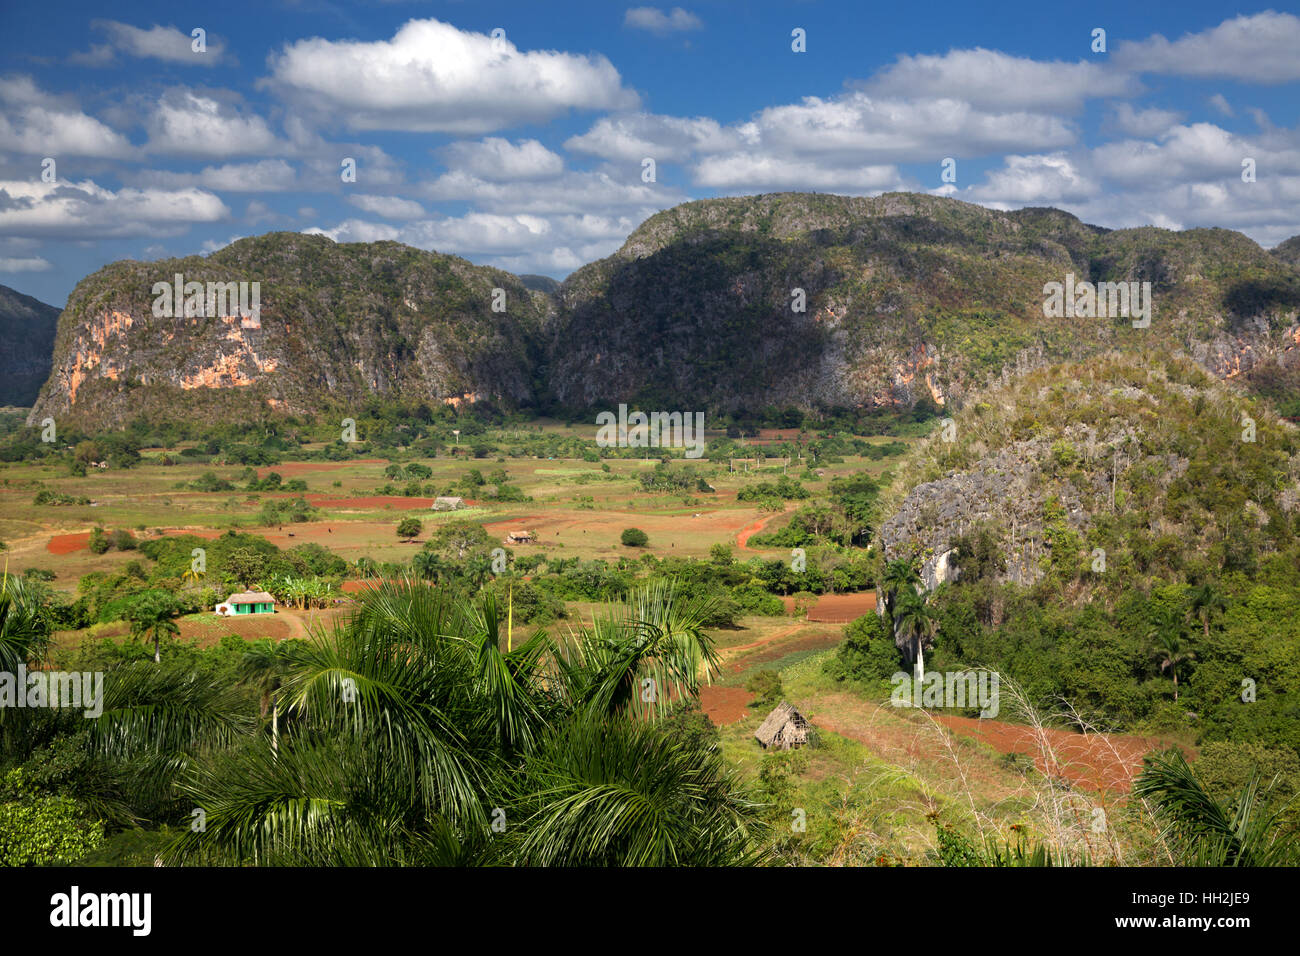 Region of Pinar Del Rio and Vinales, Cuba Stock Photo